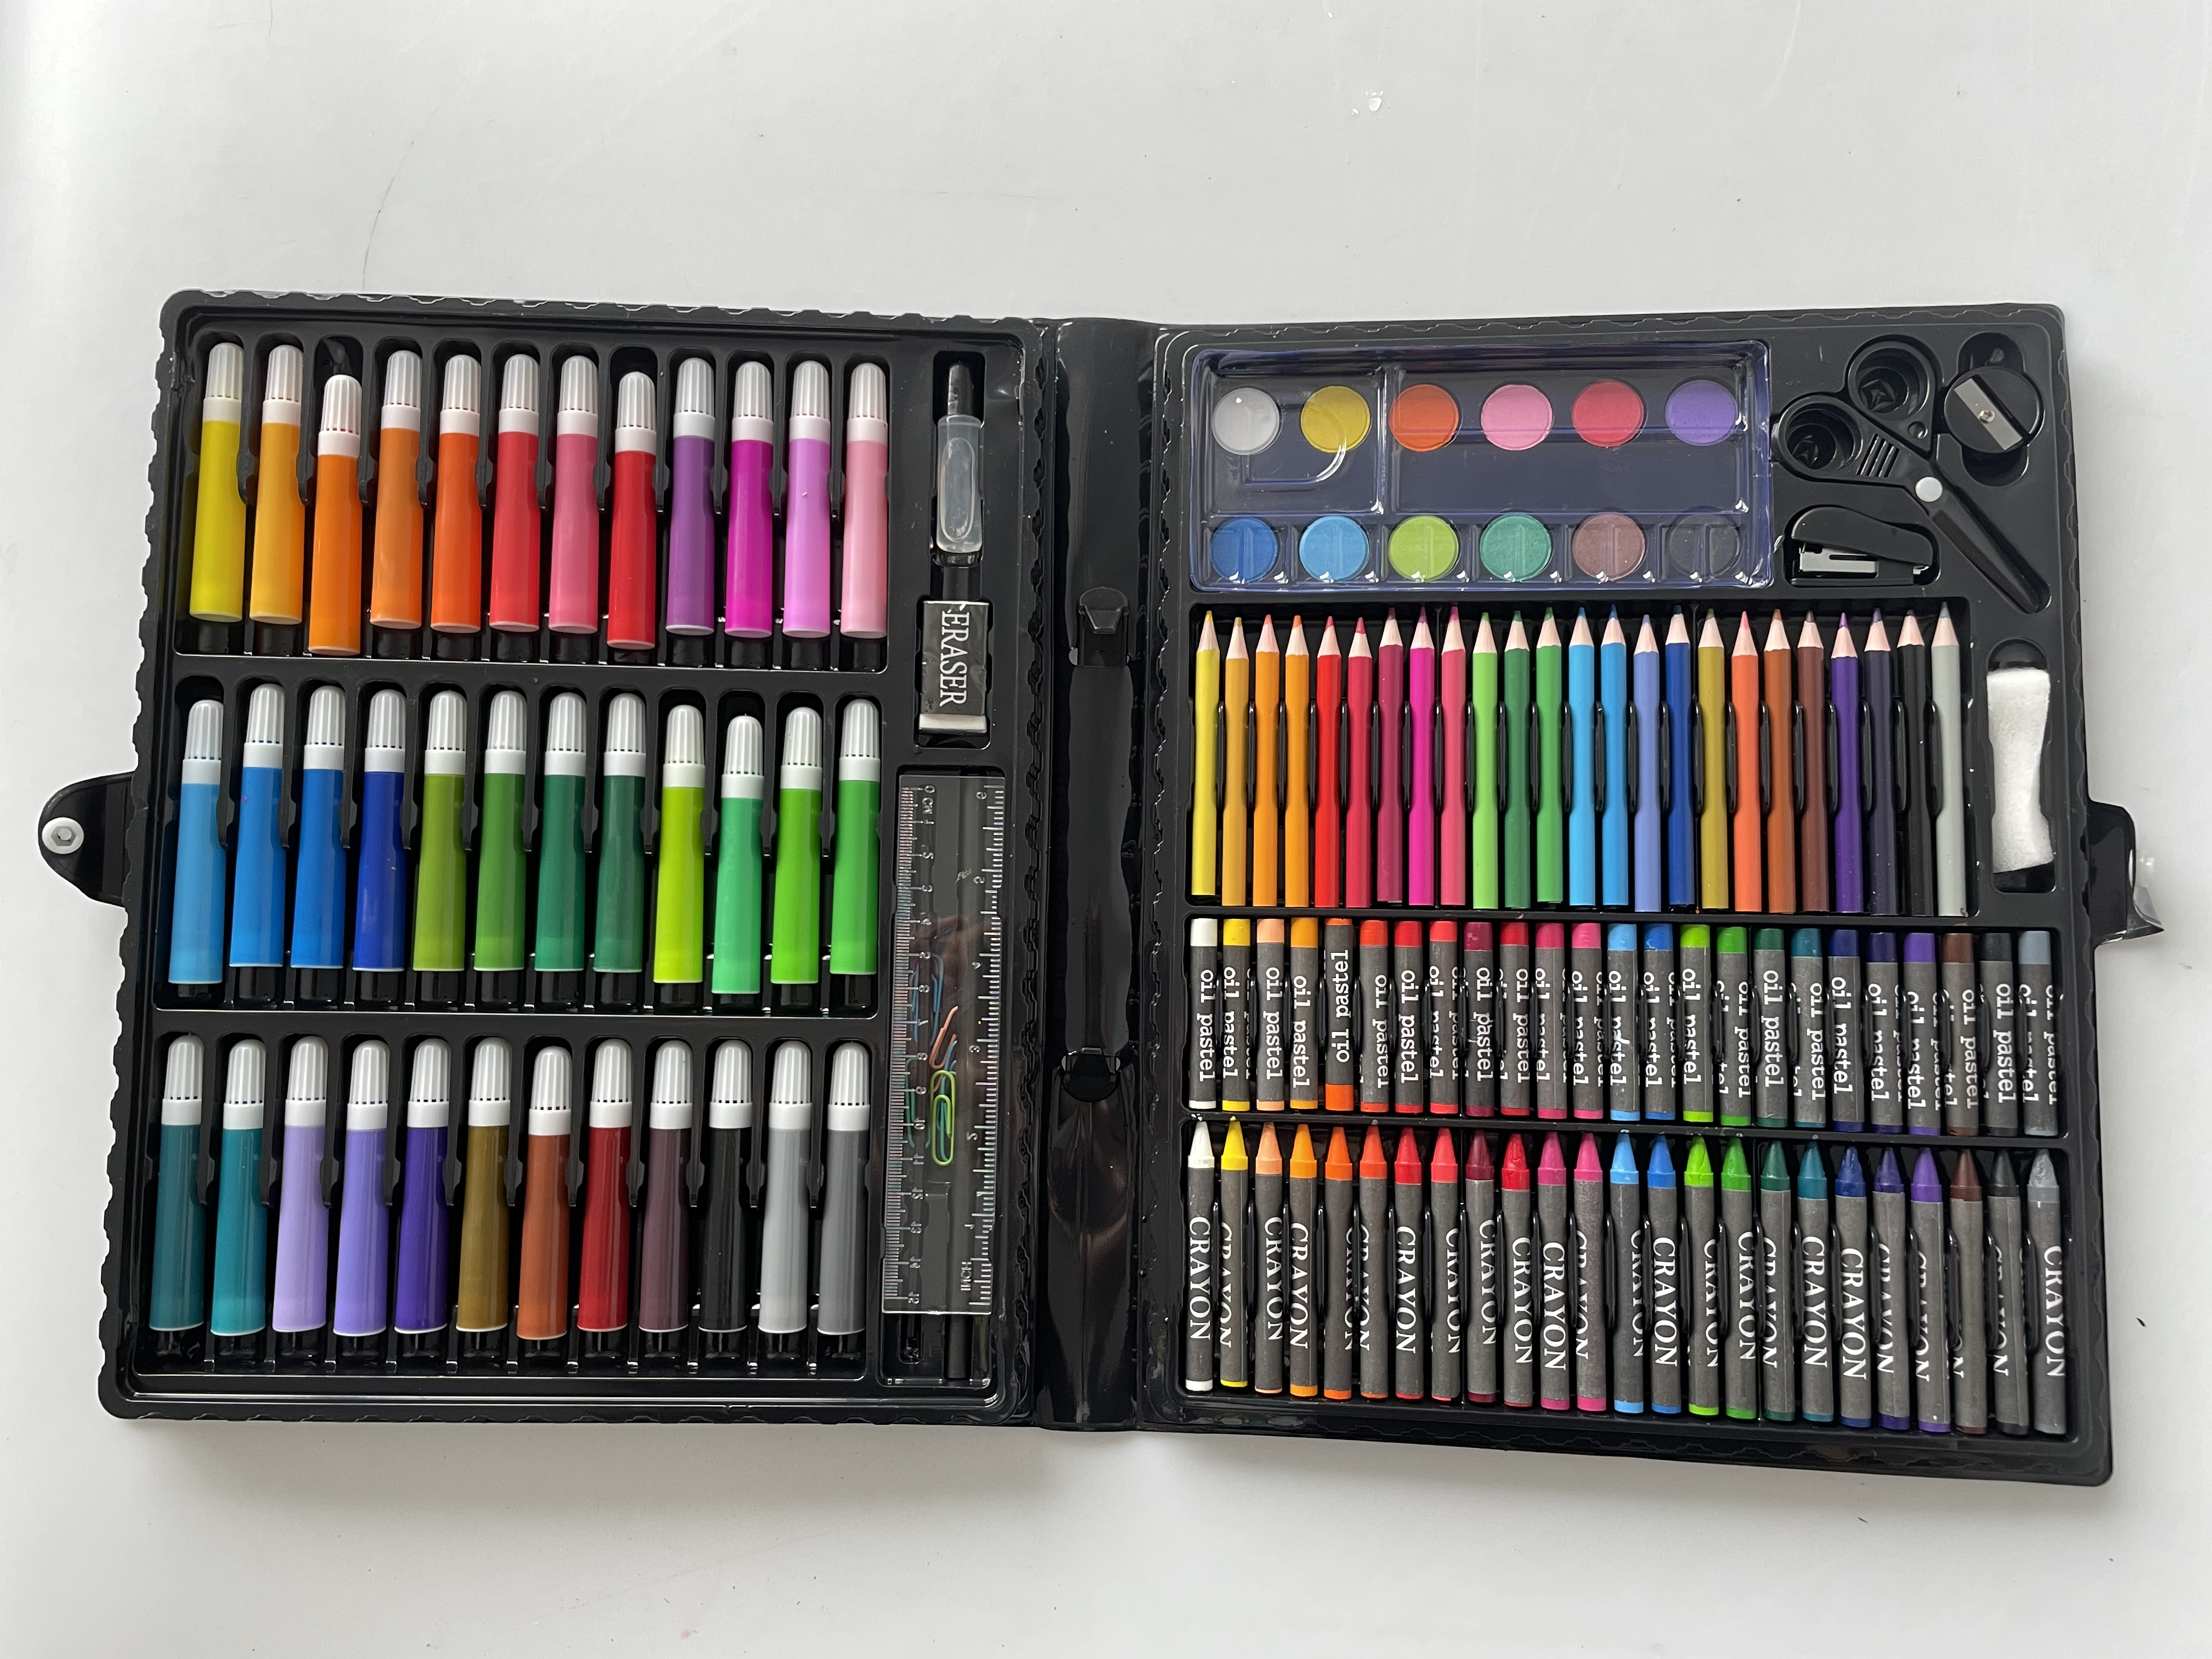 42 PCS Crayon, Water Pen Drawing Gift Set Stationery Set for Kids - China  Stationery Set, Drawing Set